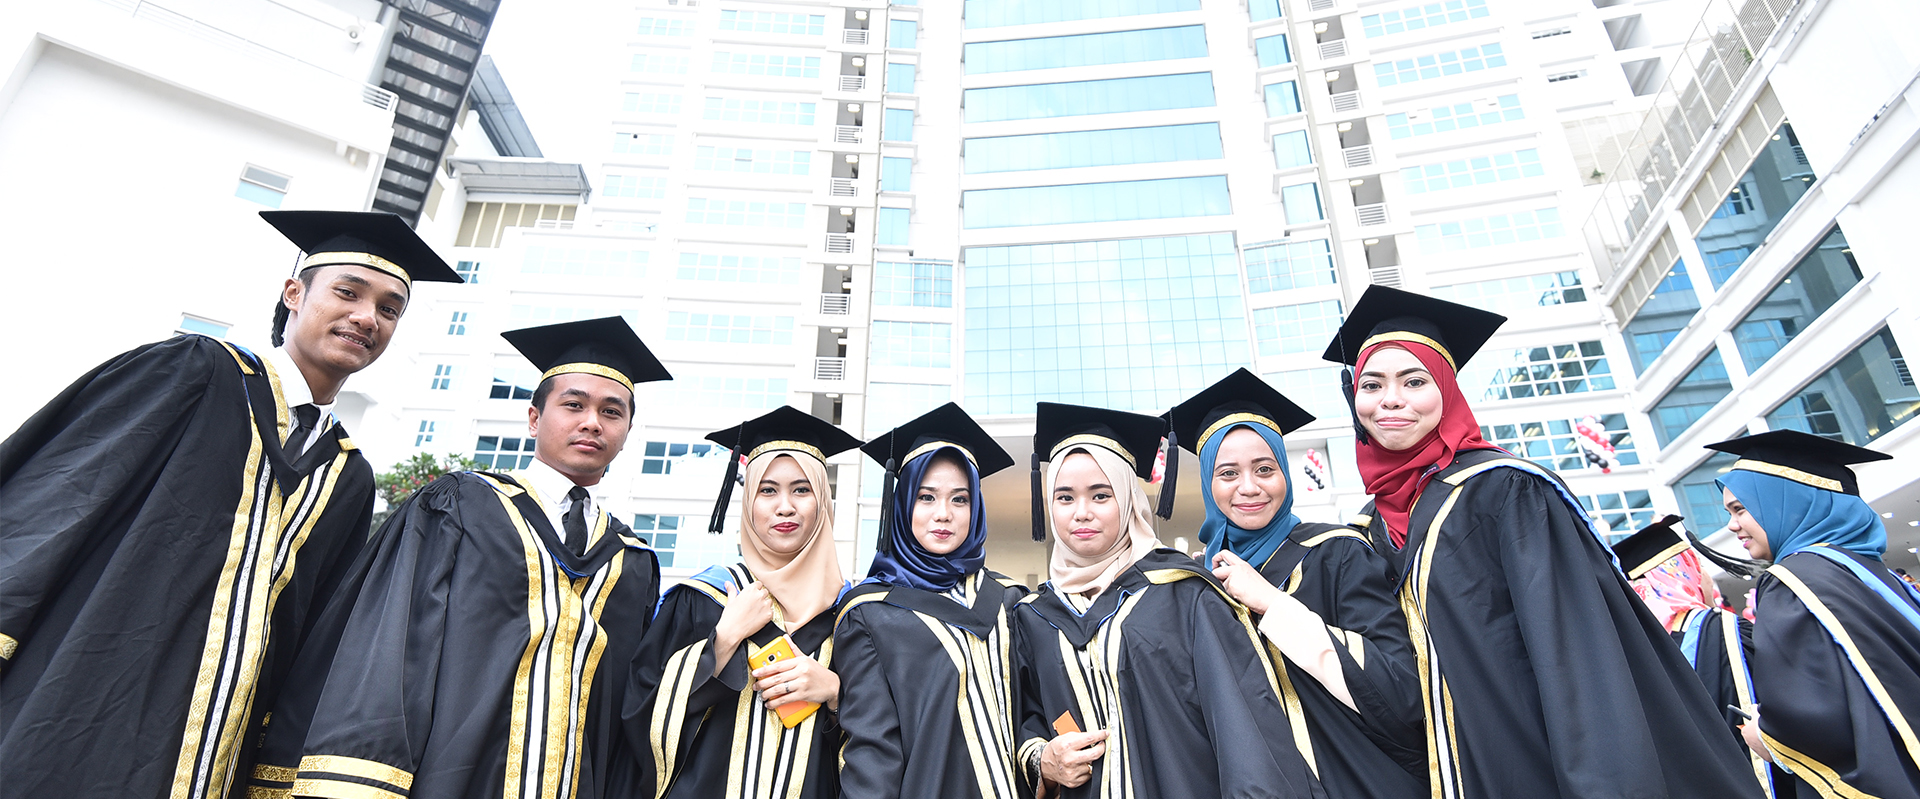 Malaysia university. MSU Малайзия. Малайзия университеты. Образование в Малайзии. Студенты Малайзии.